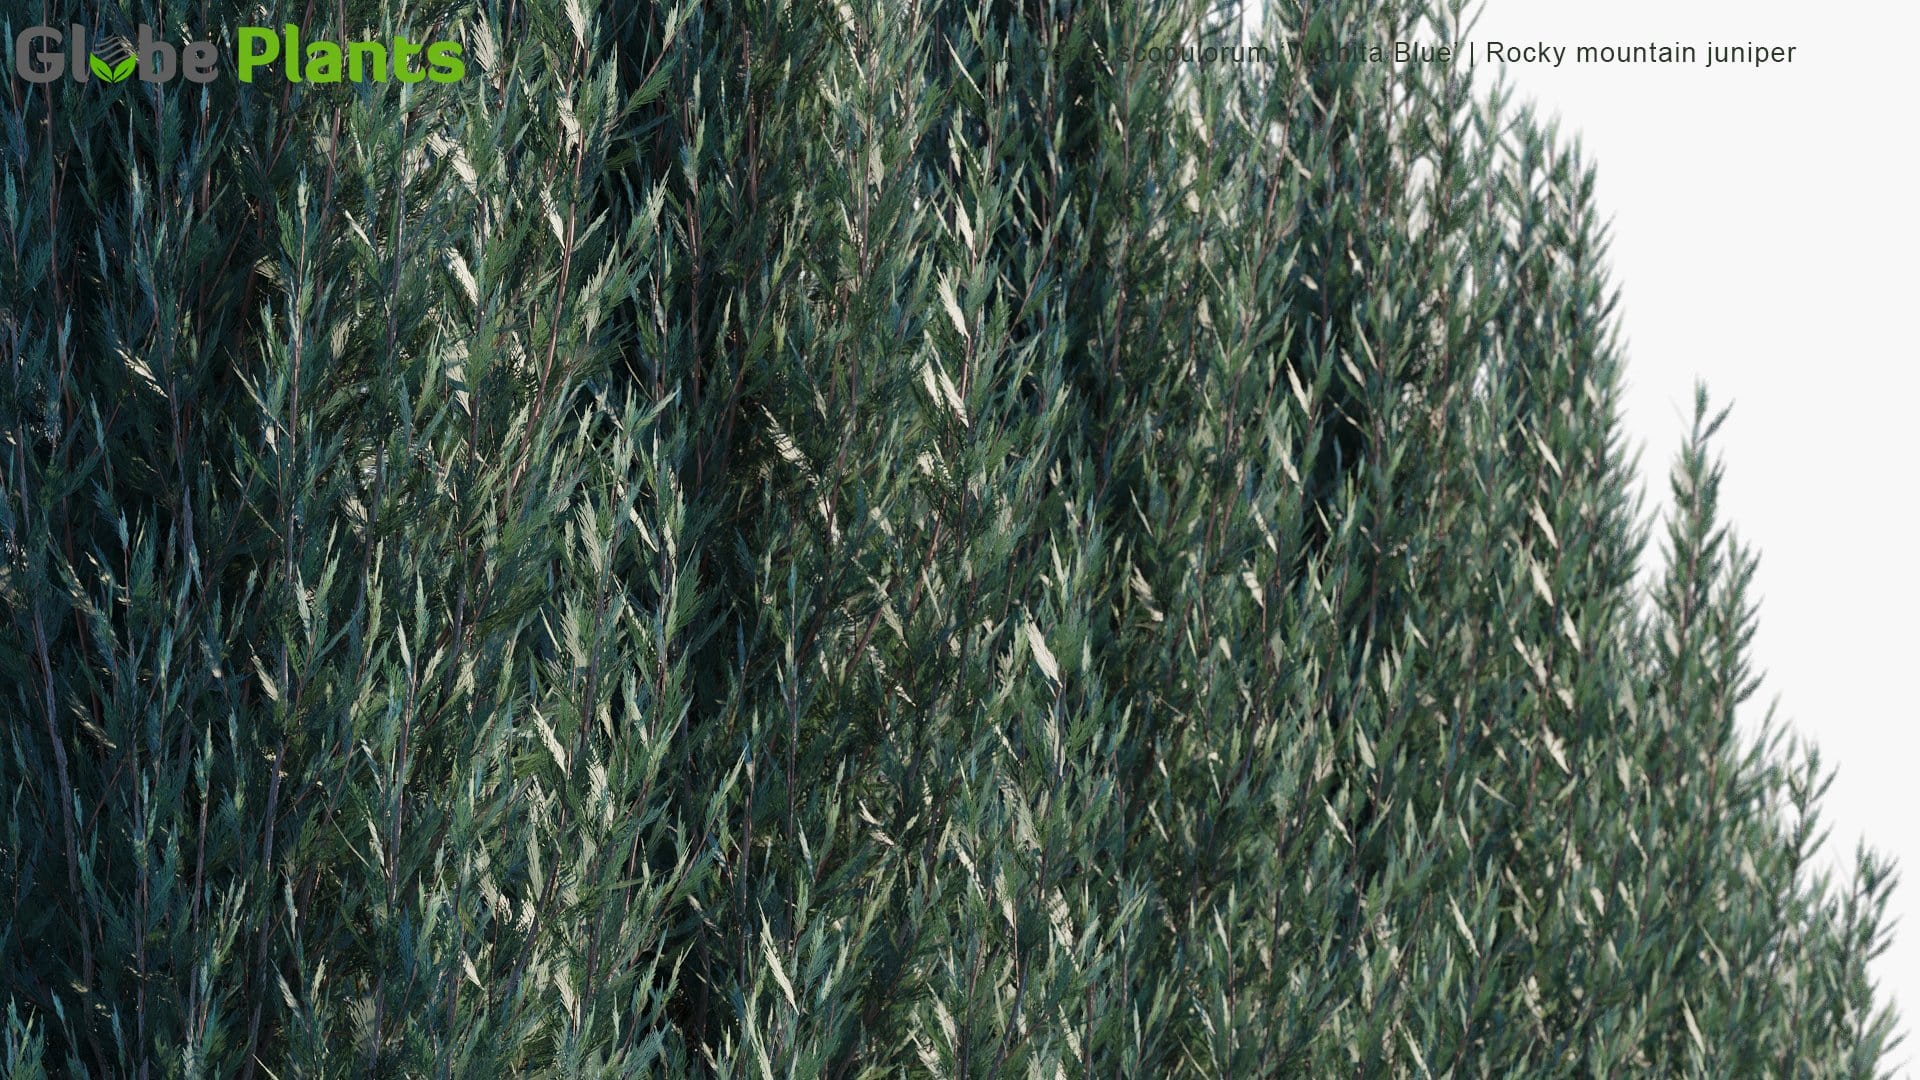 Juniperus Scopulorum 'Wichita Blue' 3D Model